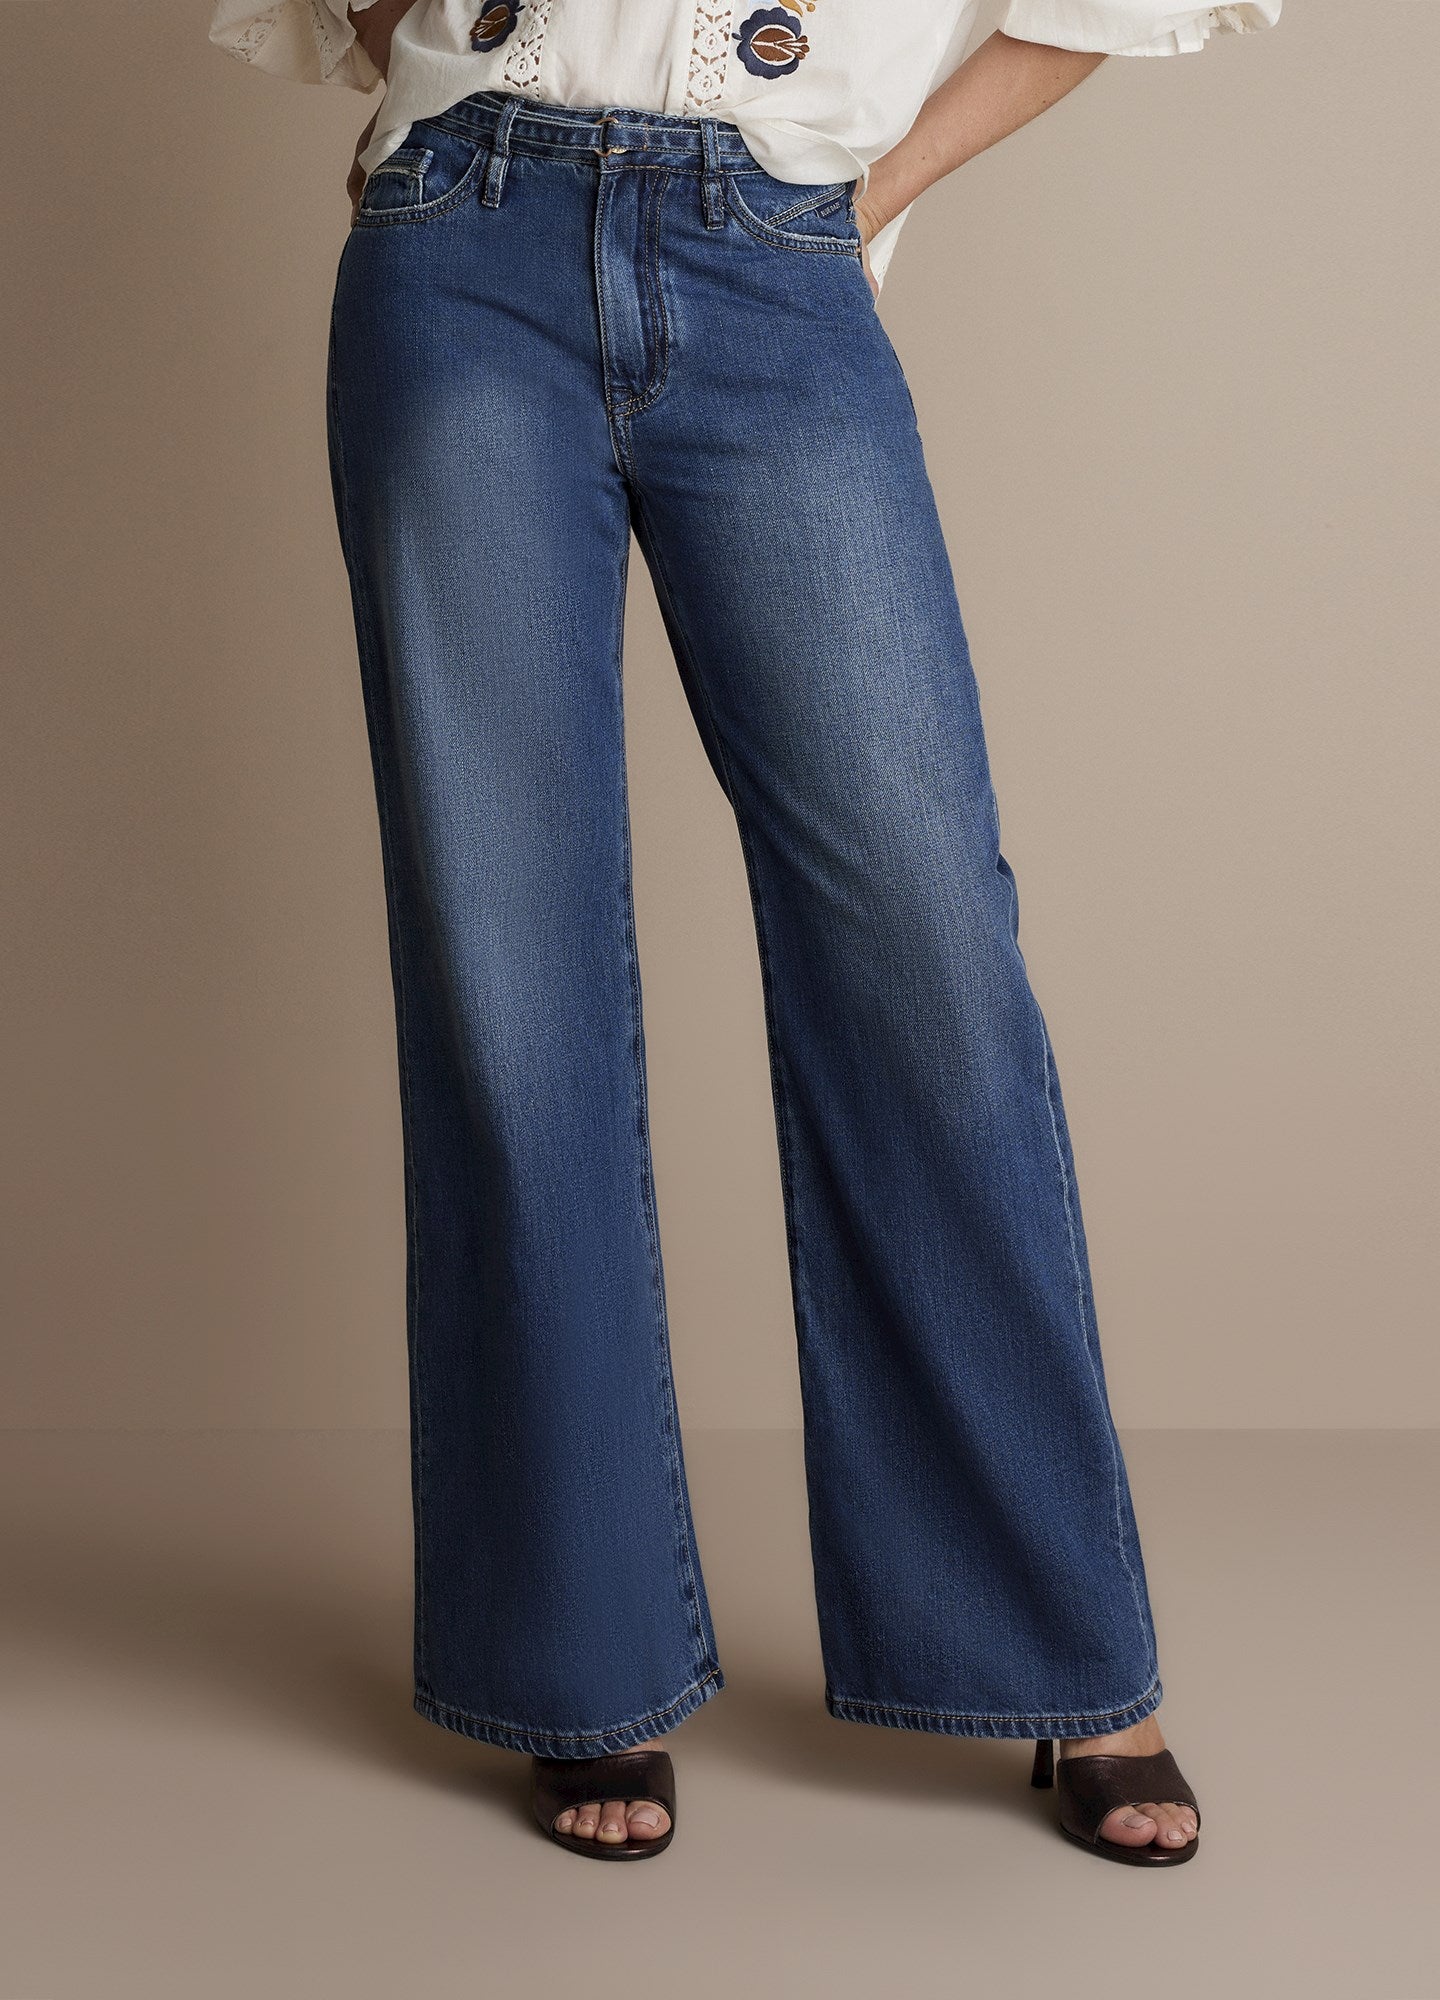 Wide 5-pocket jeans